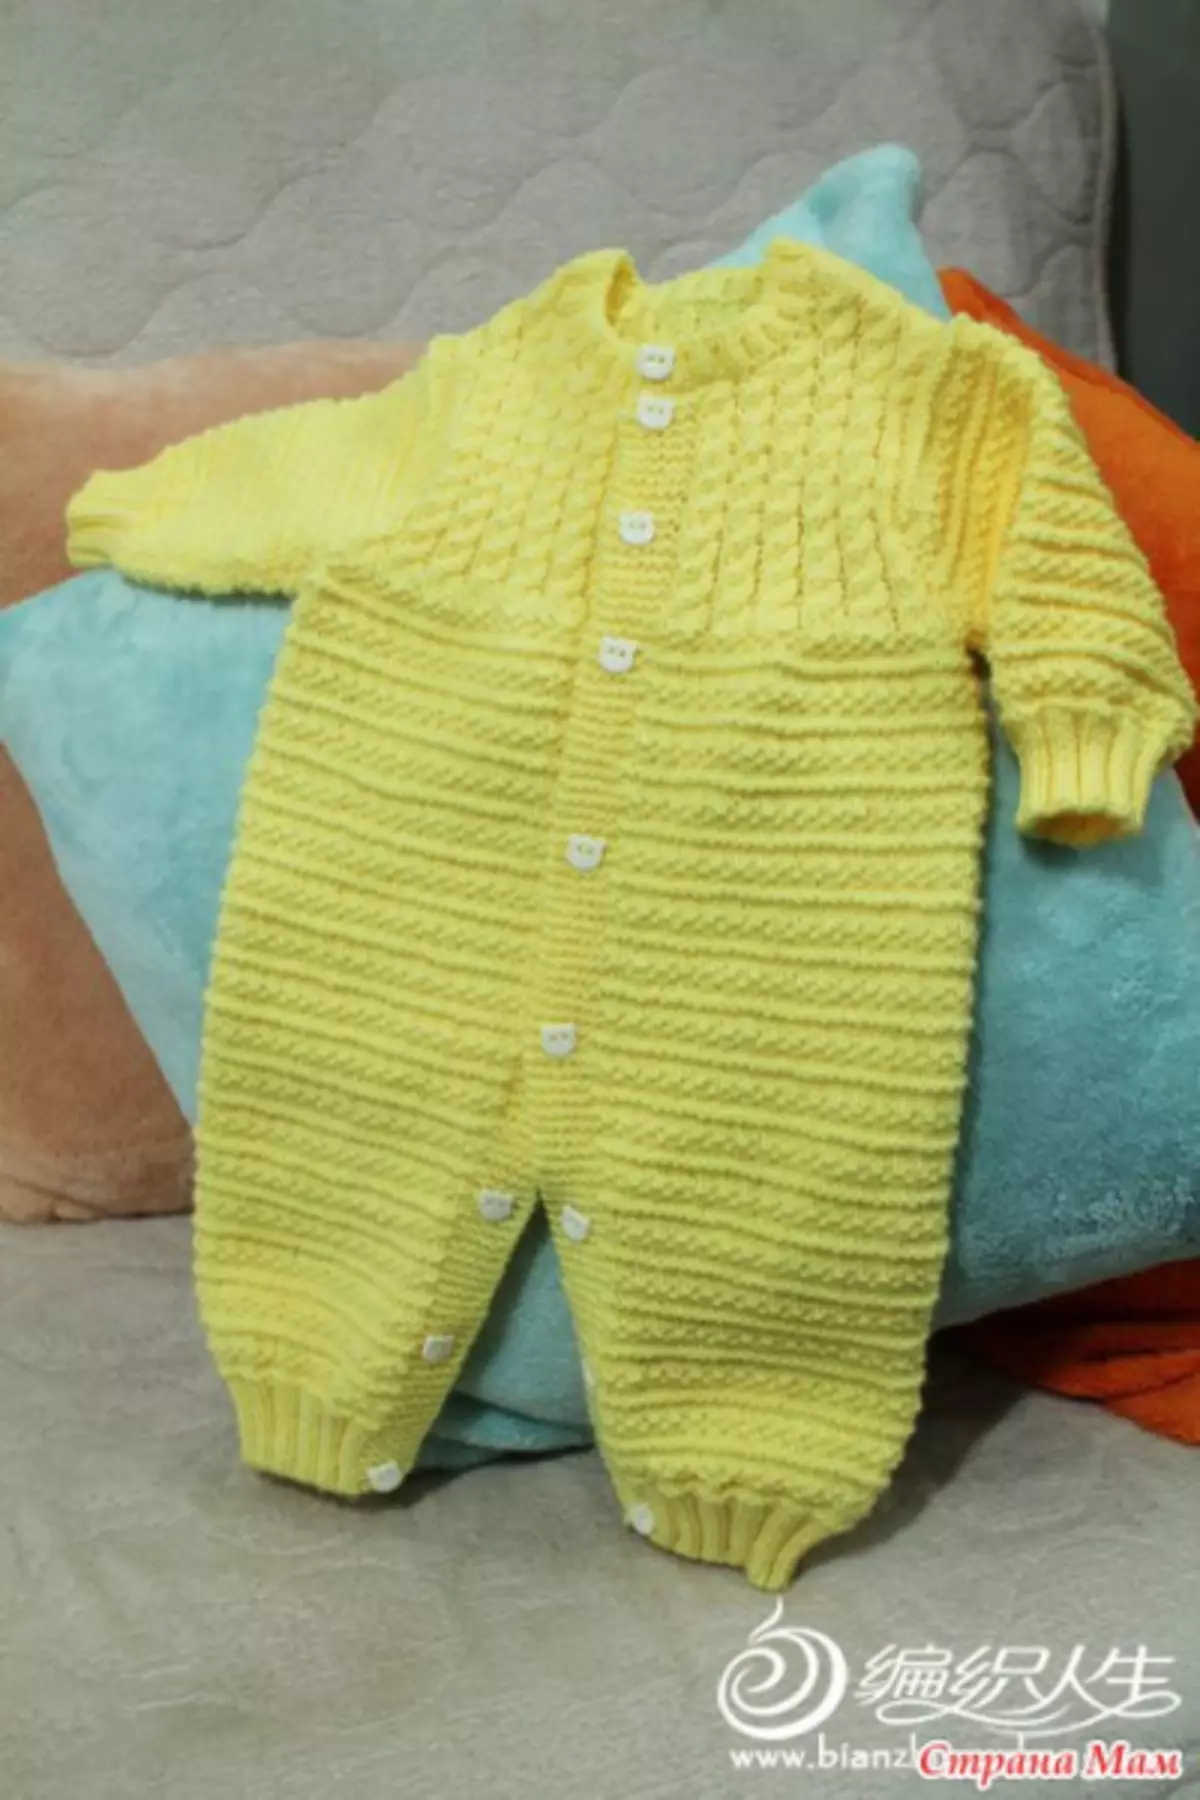 Jumpsuit strikket til nyfødte: Video hæklet lektioner